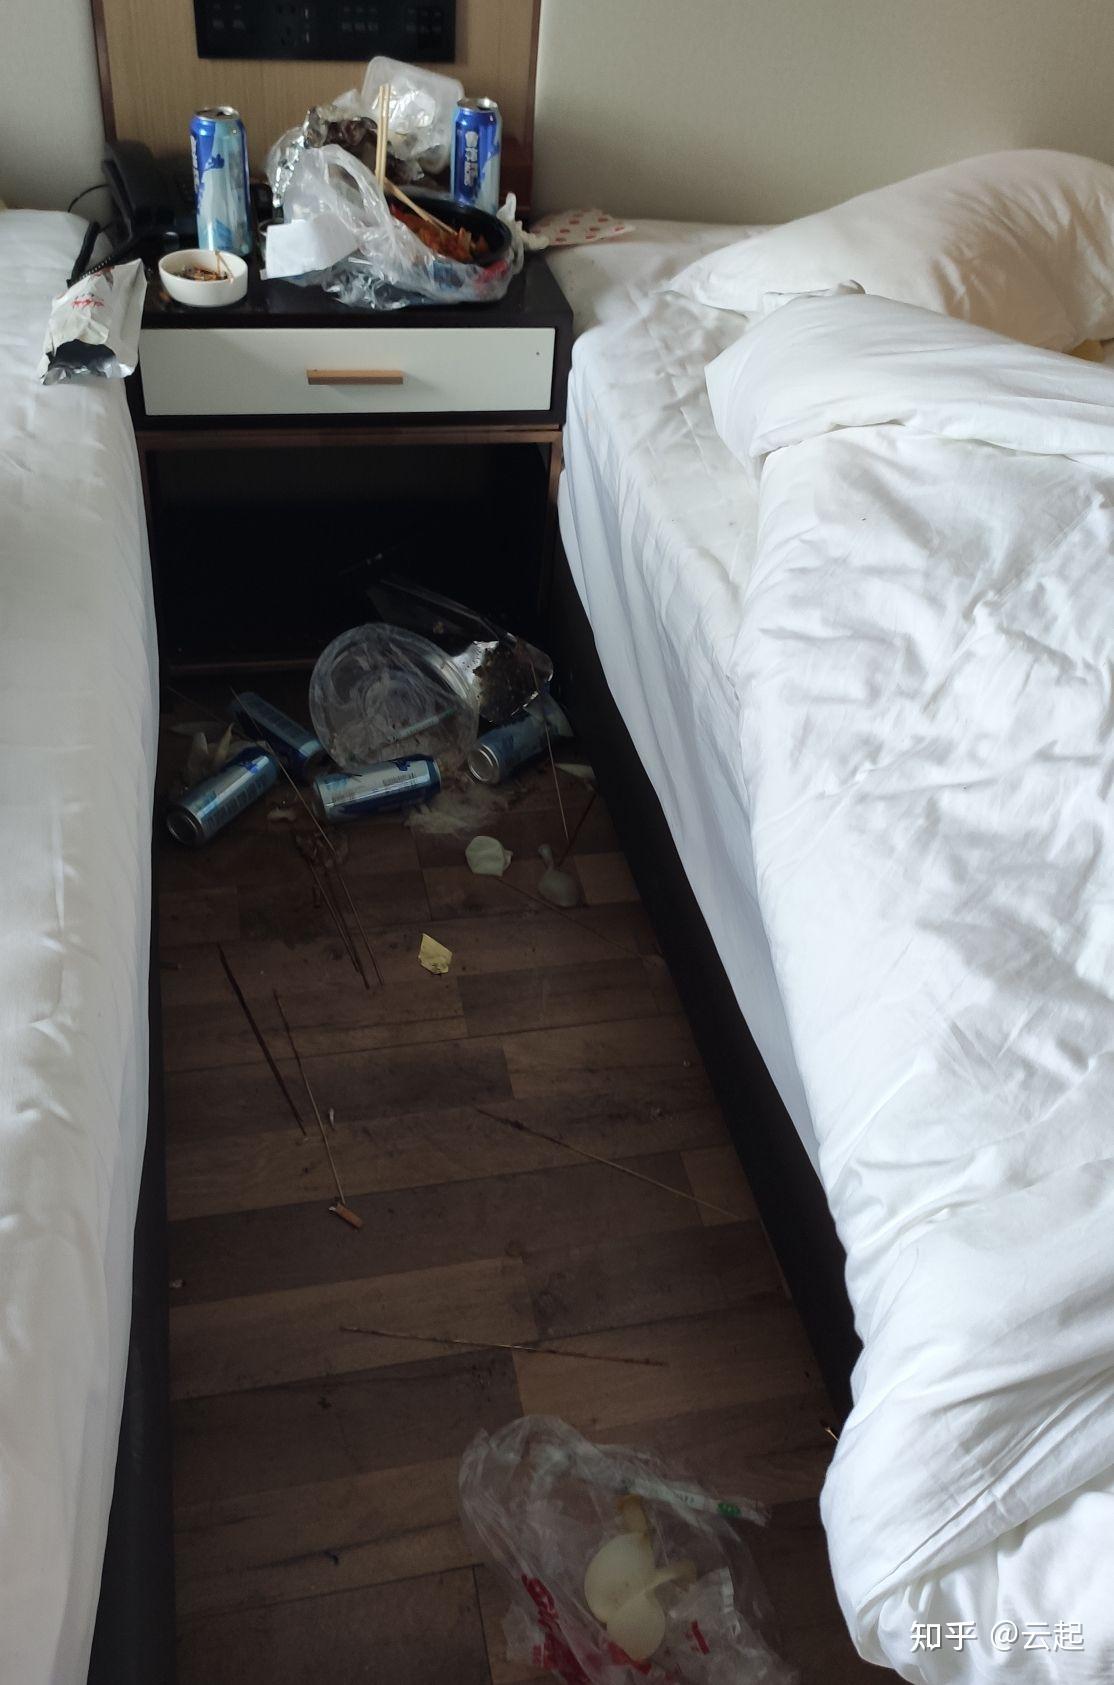 如何看待 21 岁男子来青岛旅游,连住 5 天酒店退房后留下「满屋垃圾」